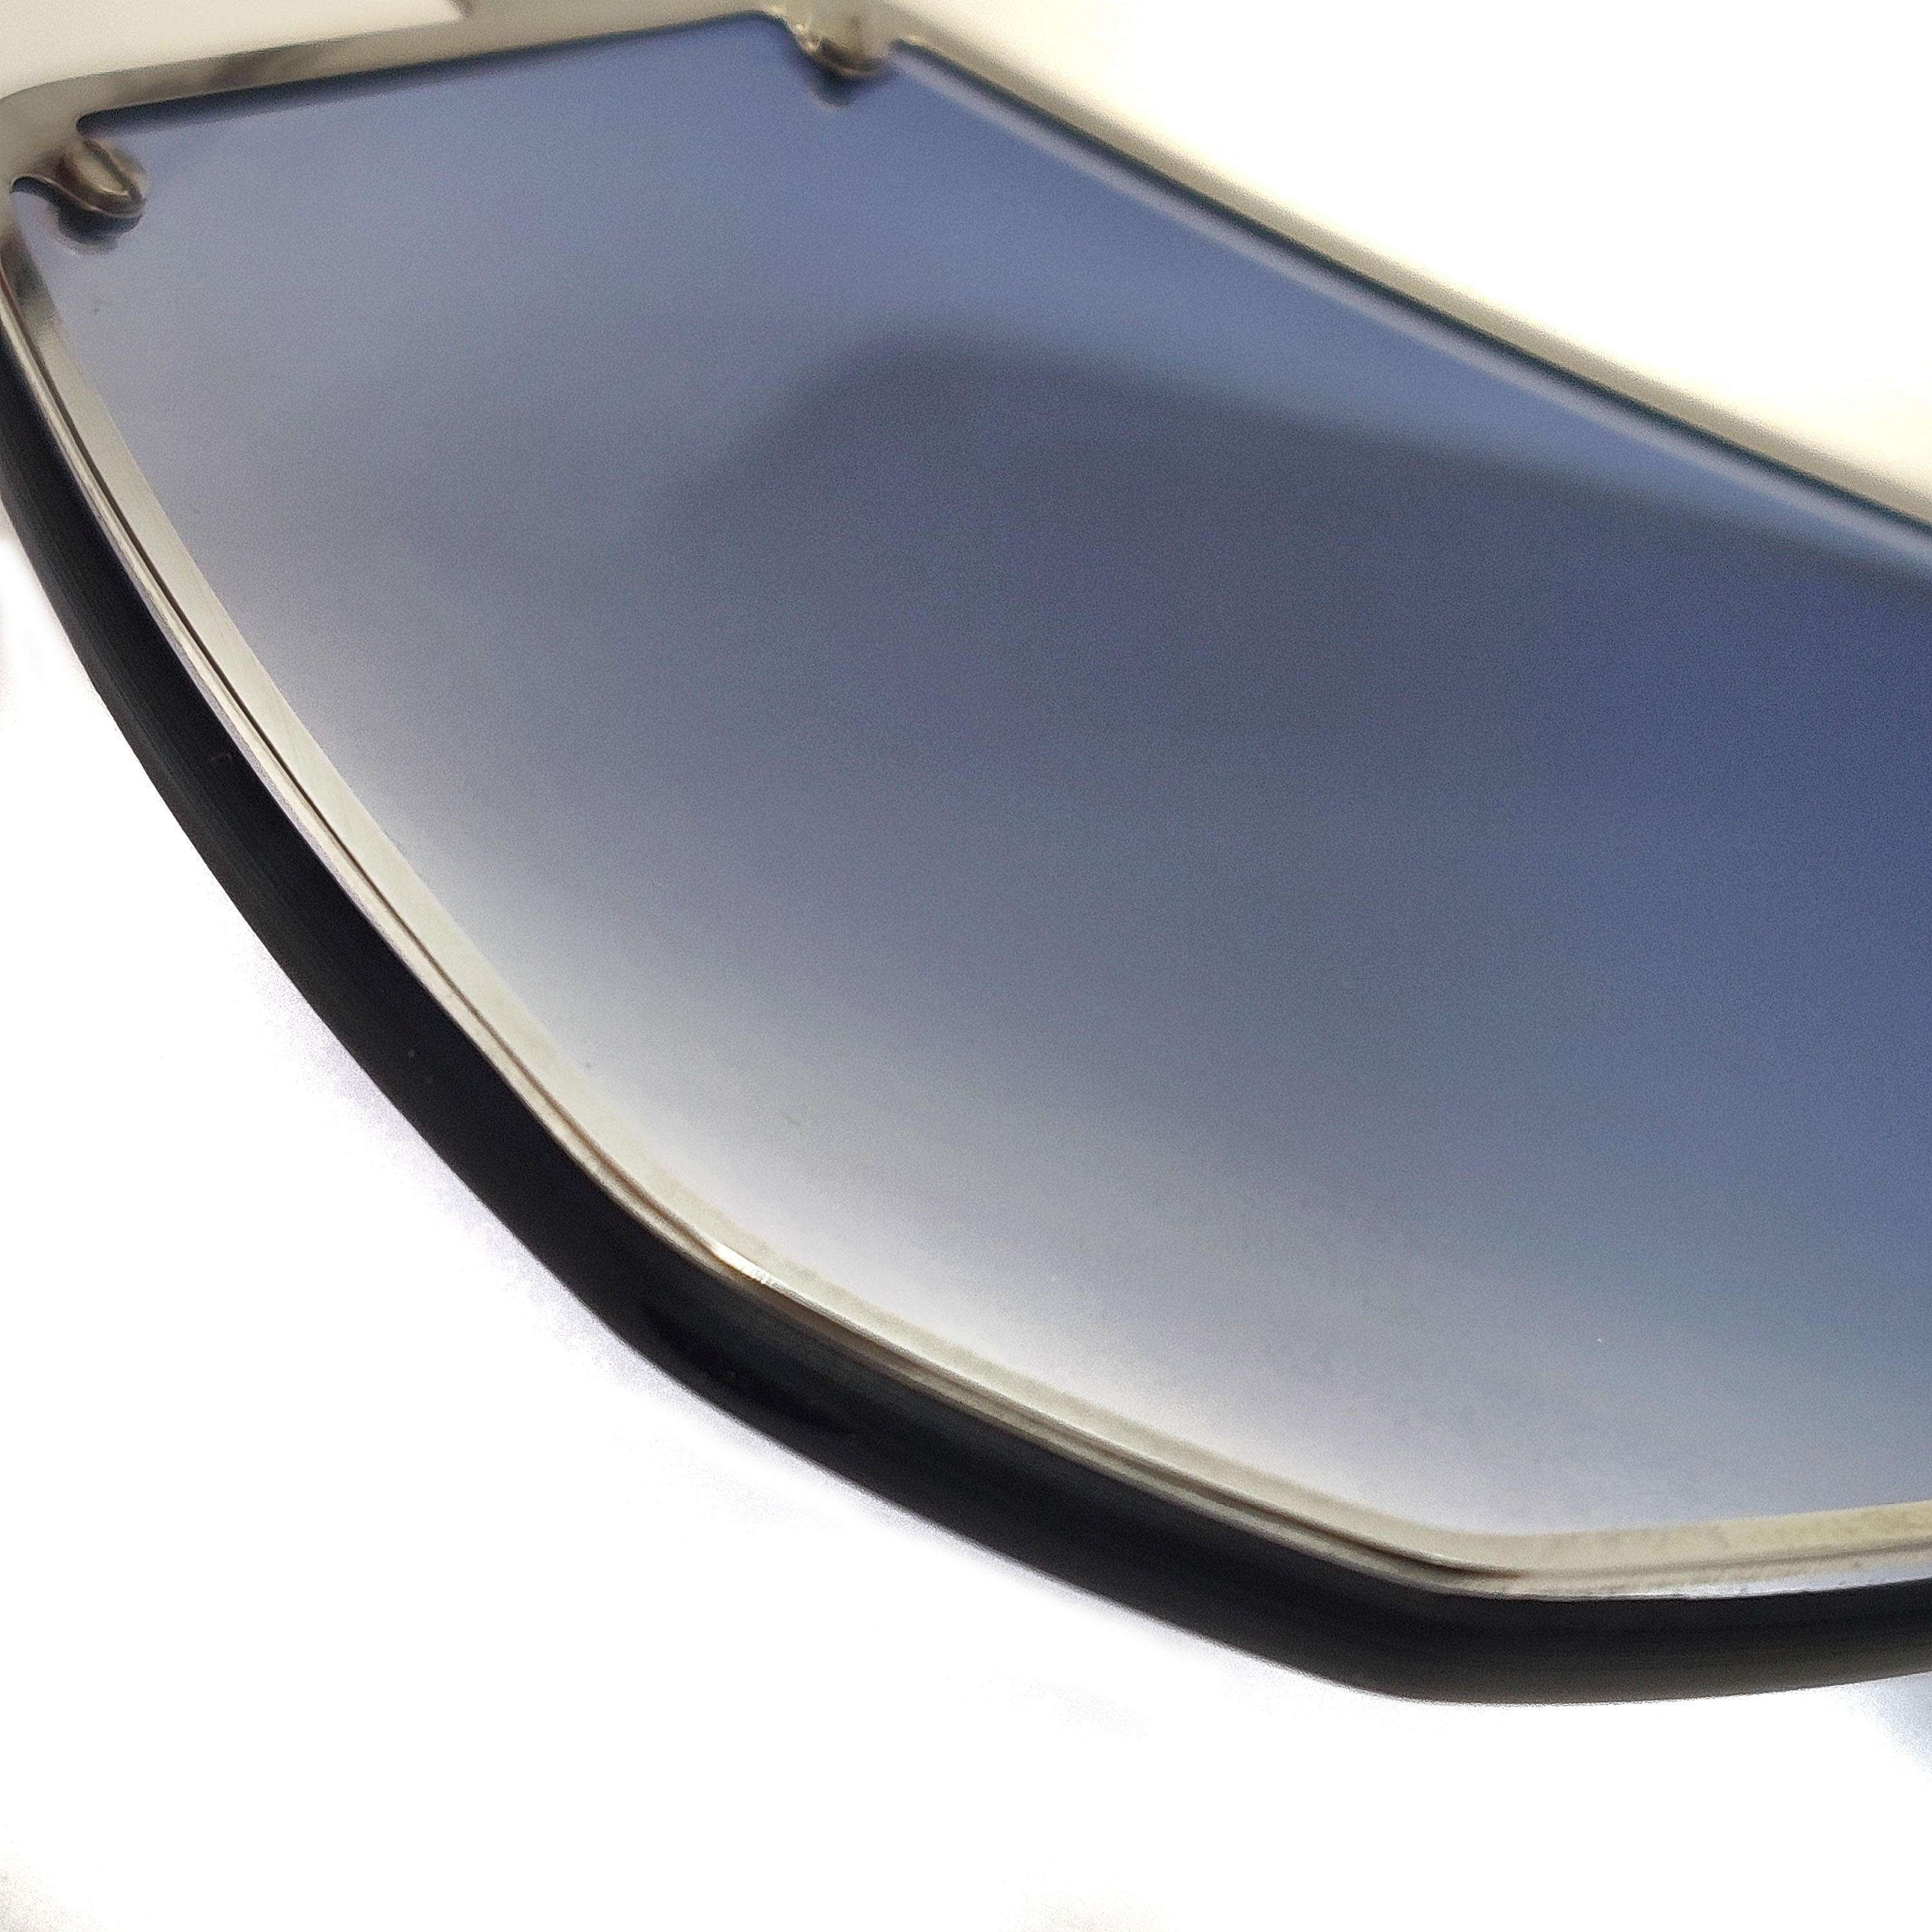 Revestimiento azul Lentes de una pieza Gafas de sol Fabricantes chinos de gafas de sol Los mayores fabricantes de gafas